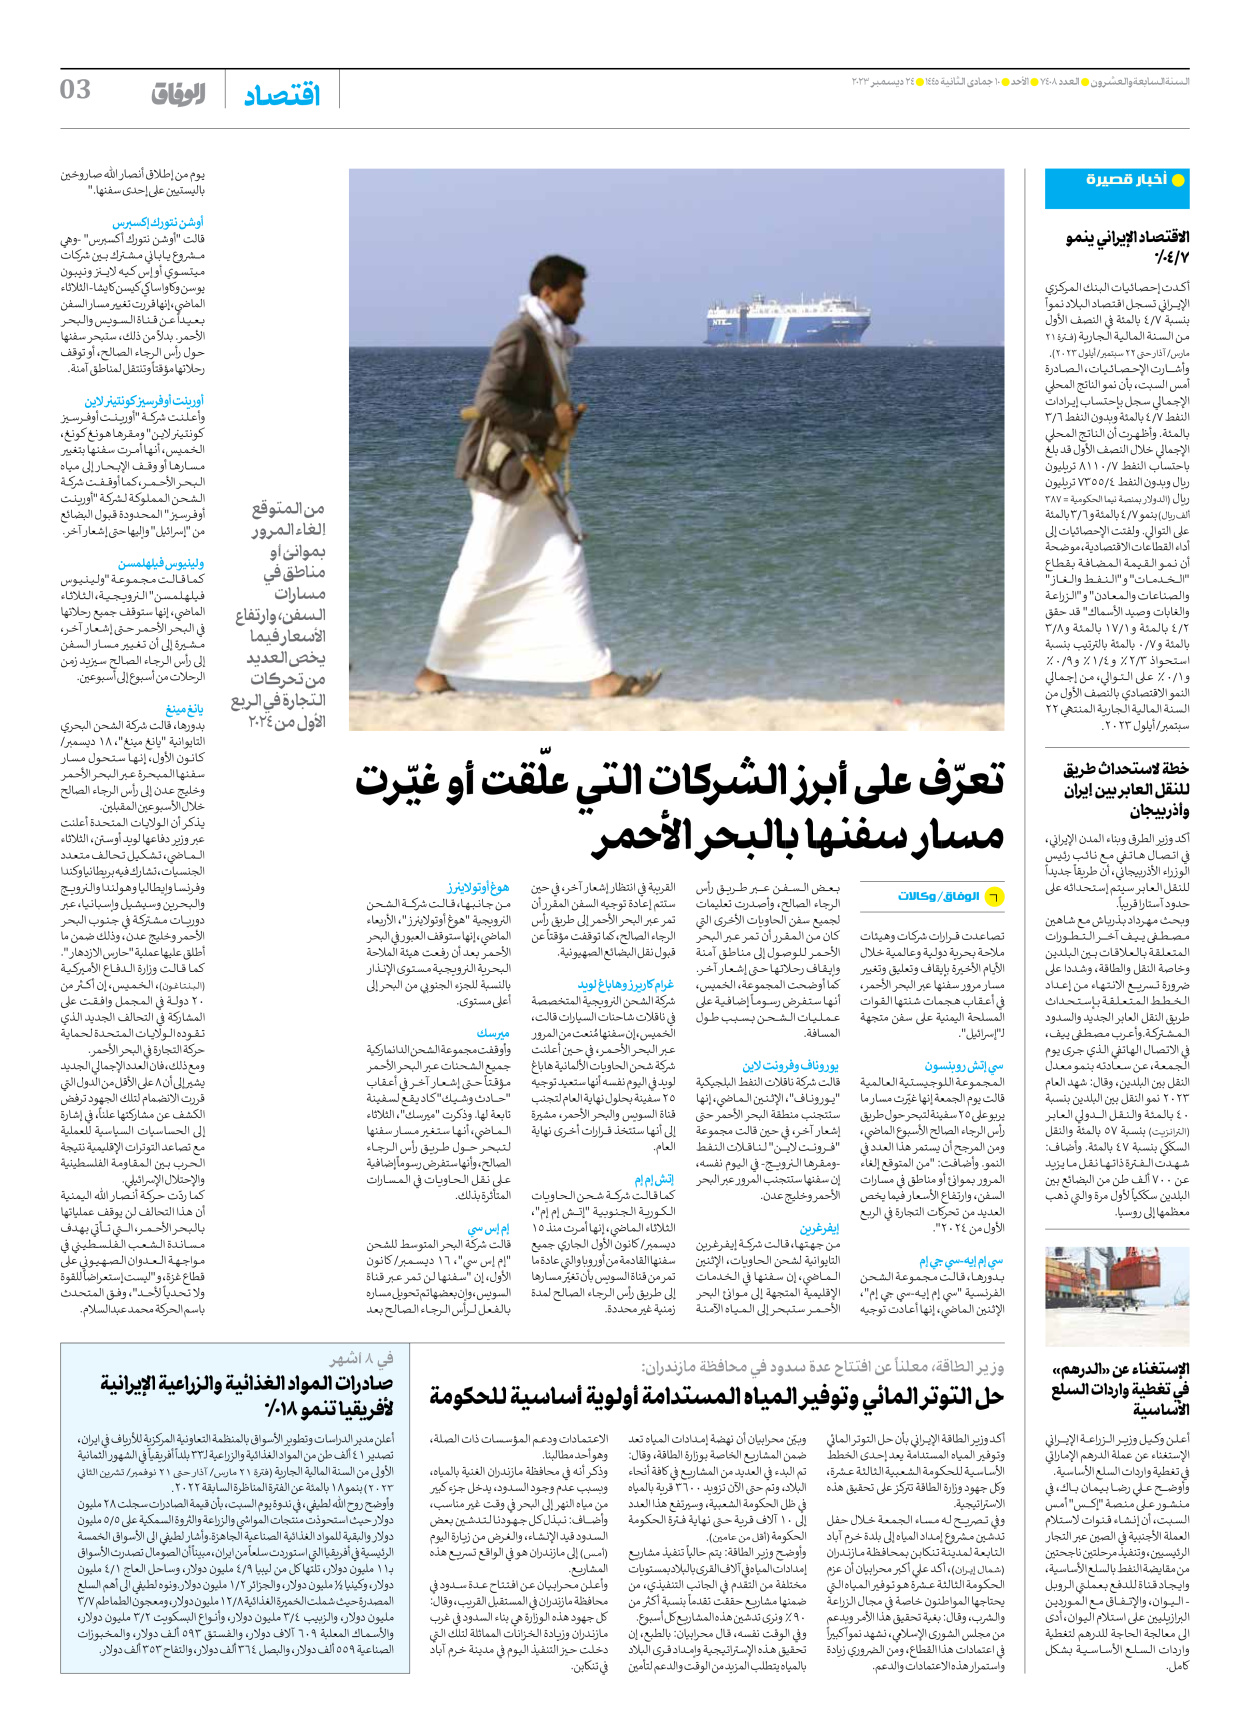 صحیفة ایران الدولیة الوفاق - العدد سبعة آلاف وأربعمائة وثمانية - ٢٤ ديسمبر ٢٠٢٣ - الصفحة ۳